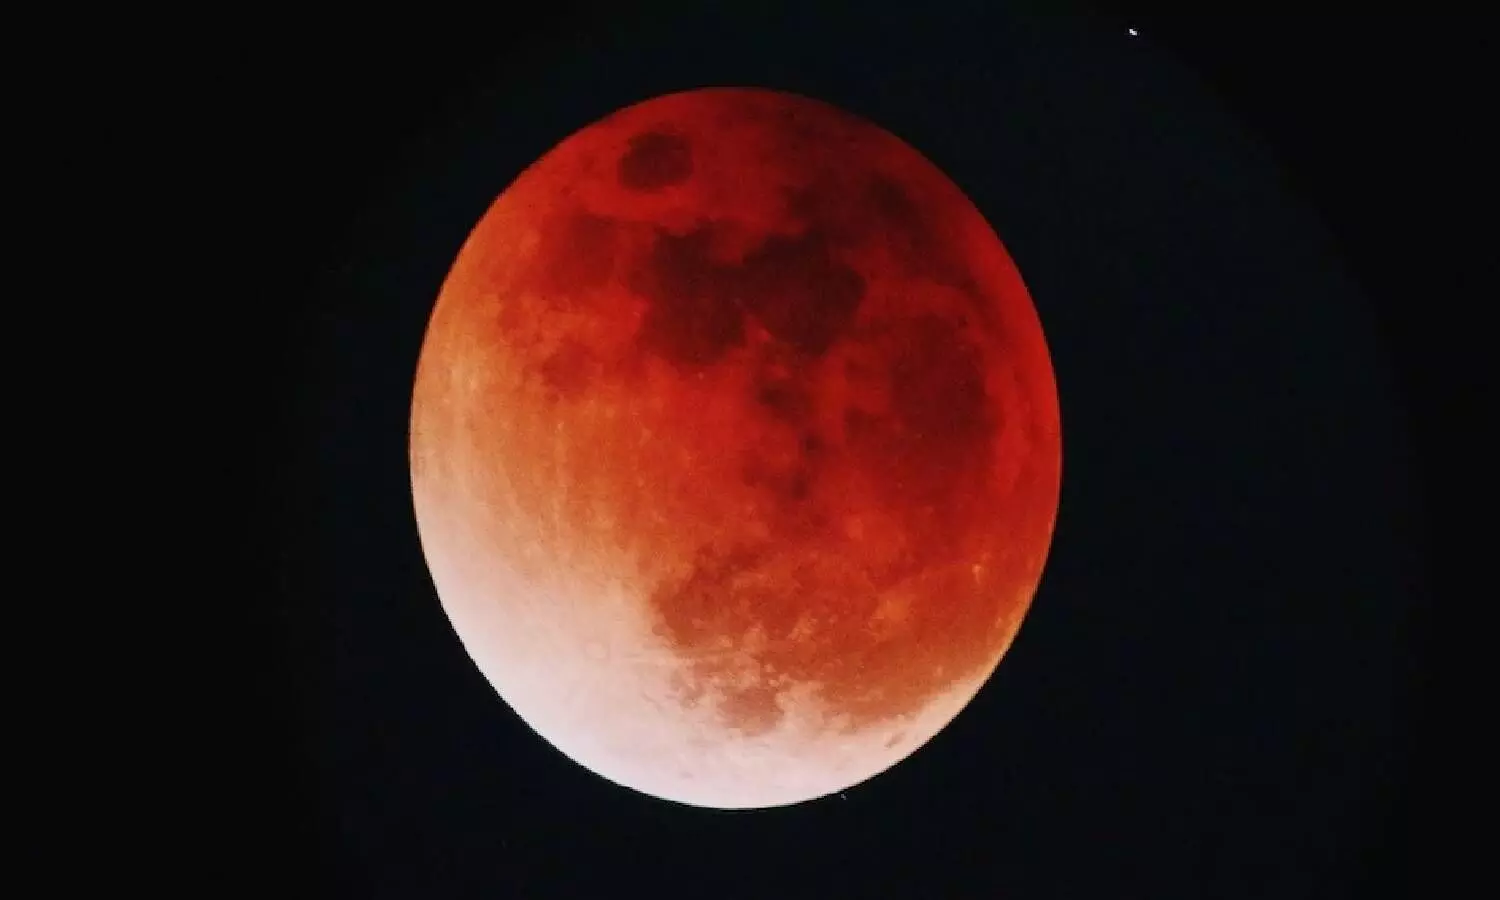 Get set for longest Lunar Eclipse of century on Nov 19